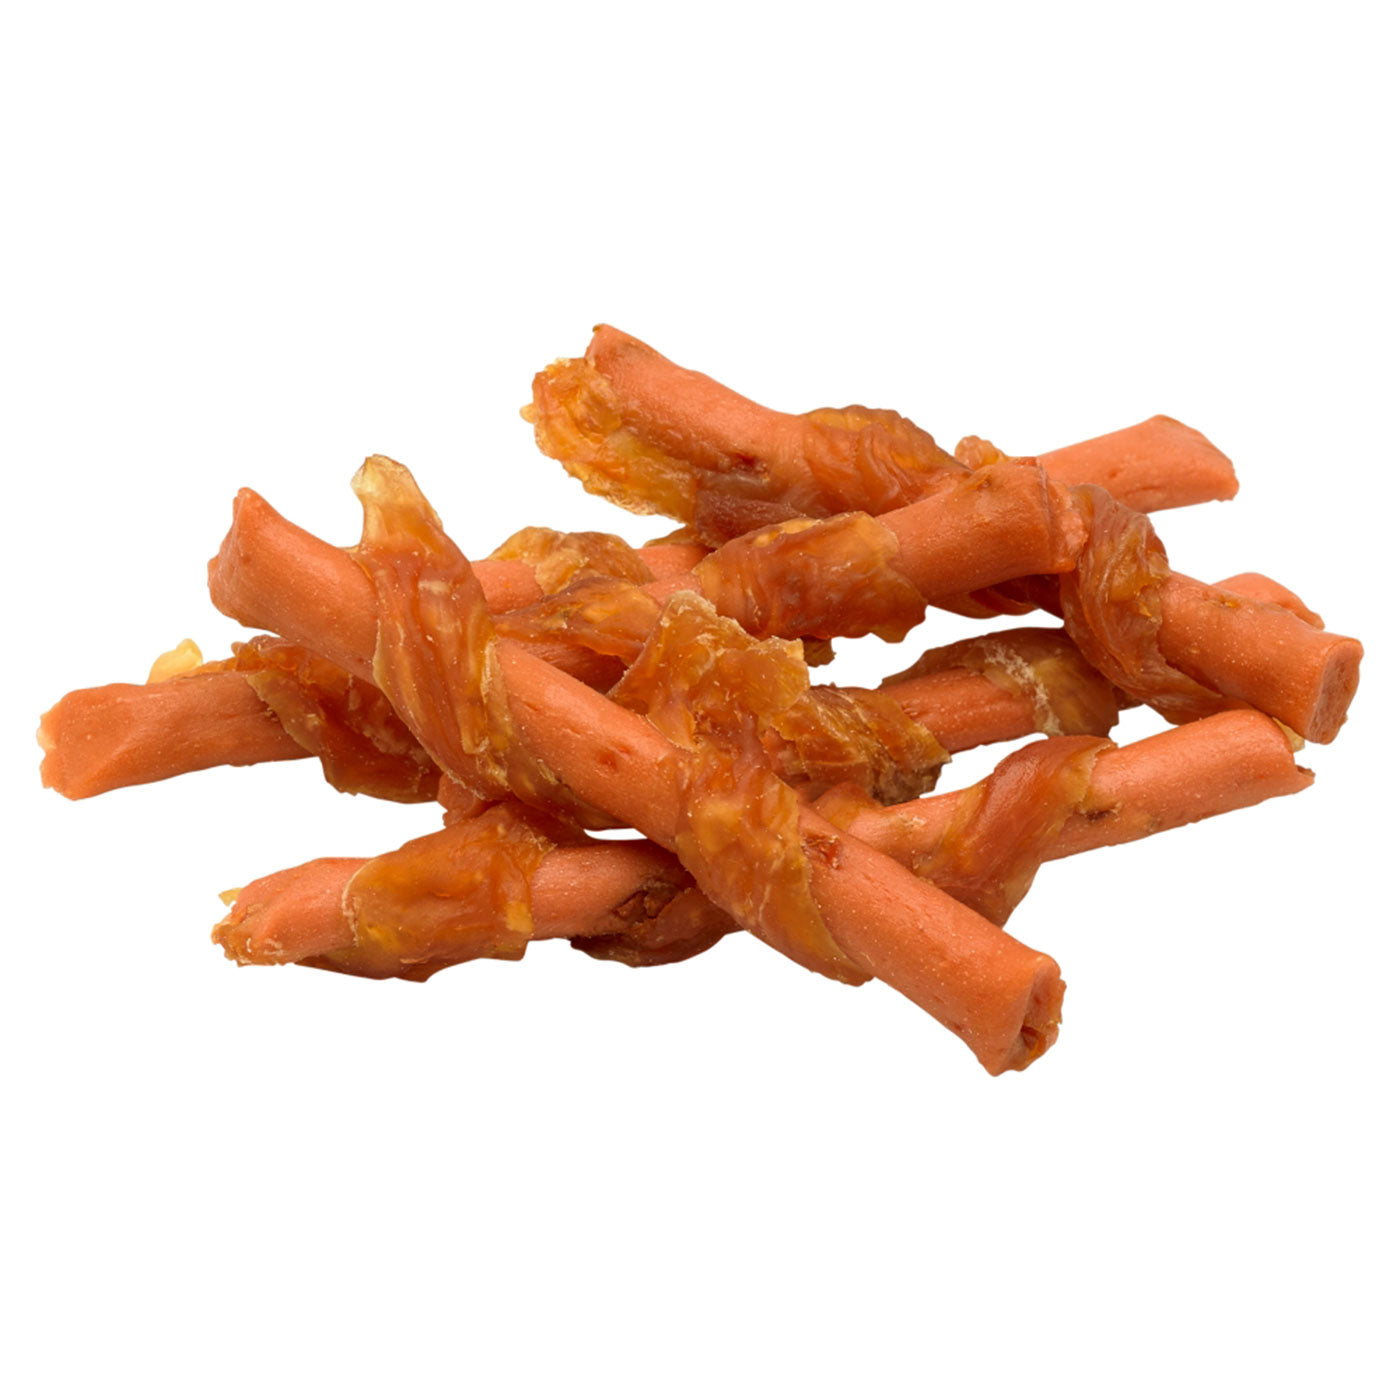 Good Boy Chicken & Carrot Sticks